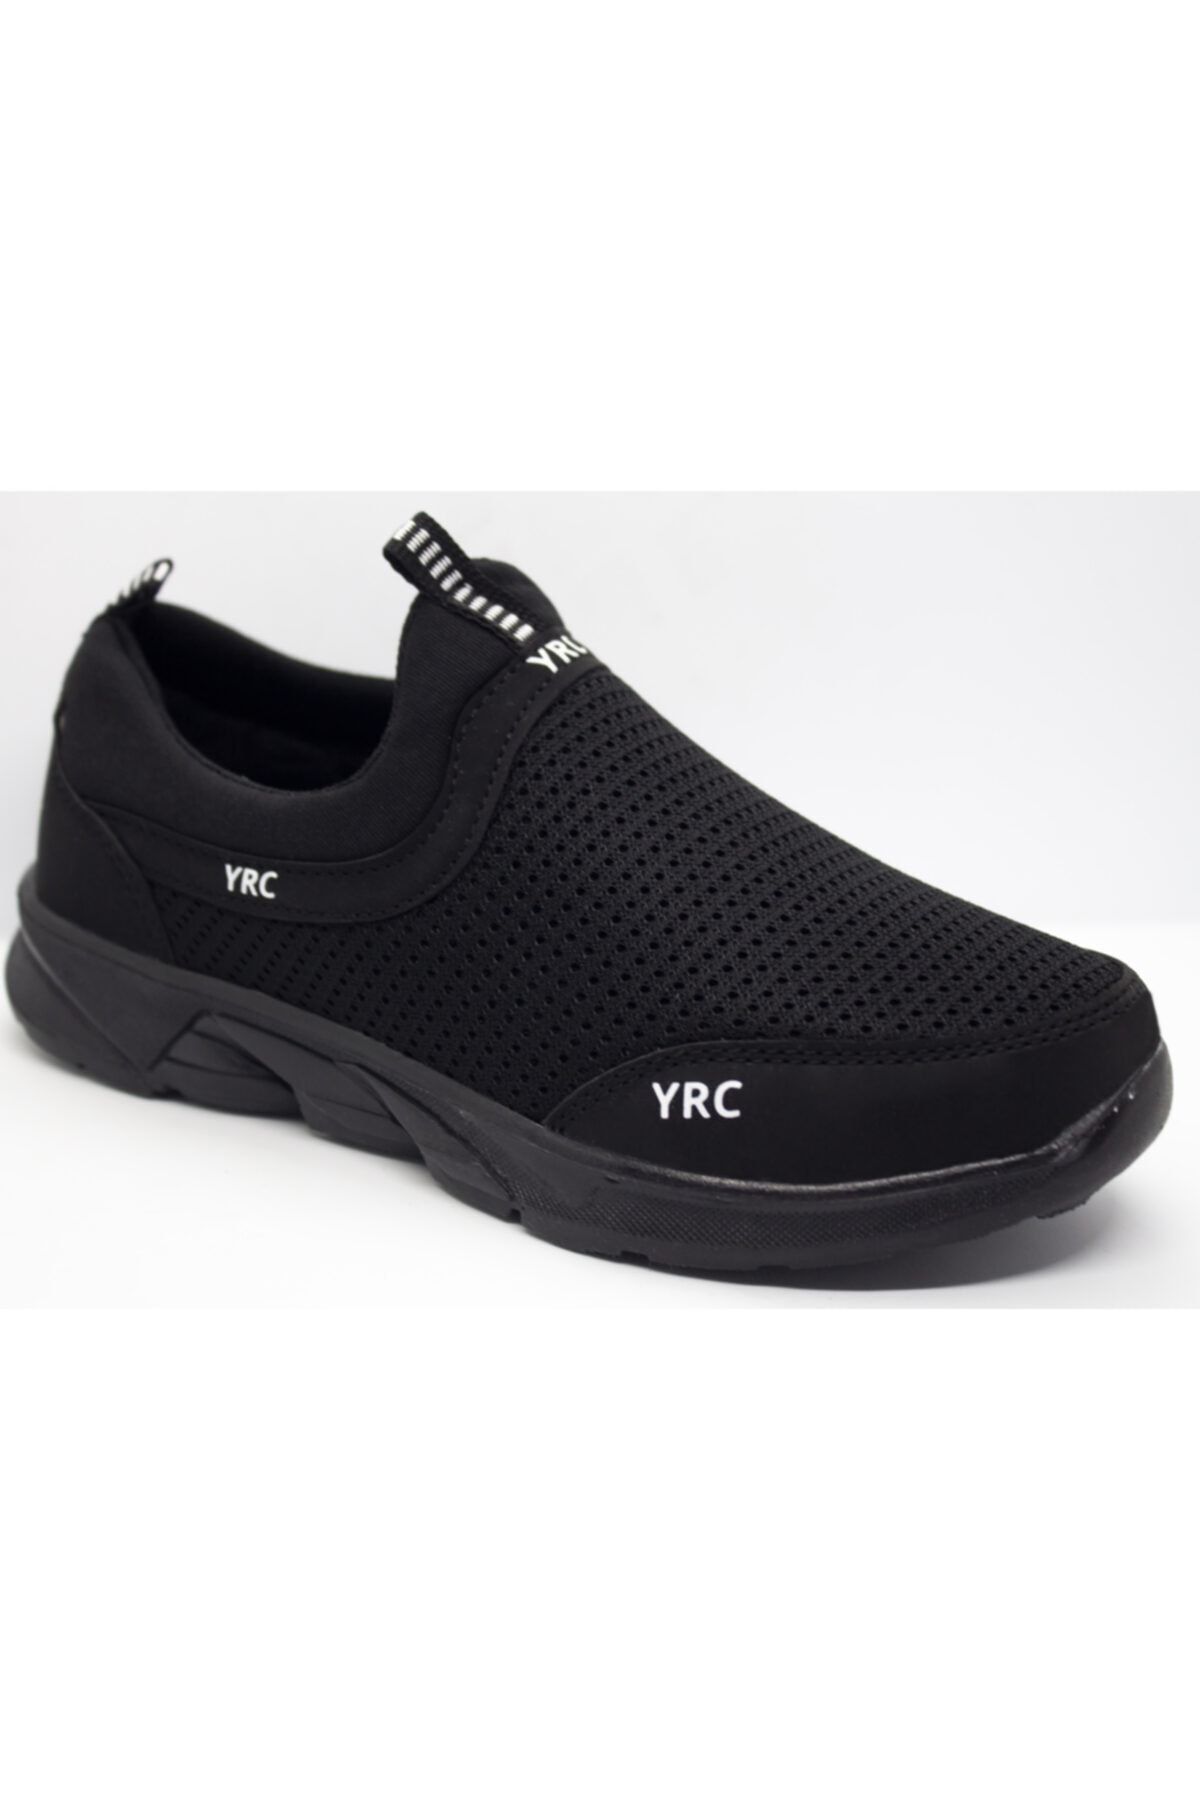 YRC Zirve Comfort Bağcıksız Günlük Spor Ayakkabı